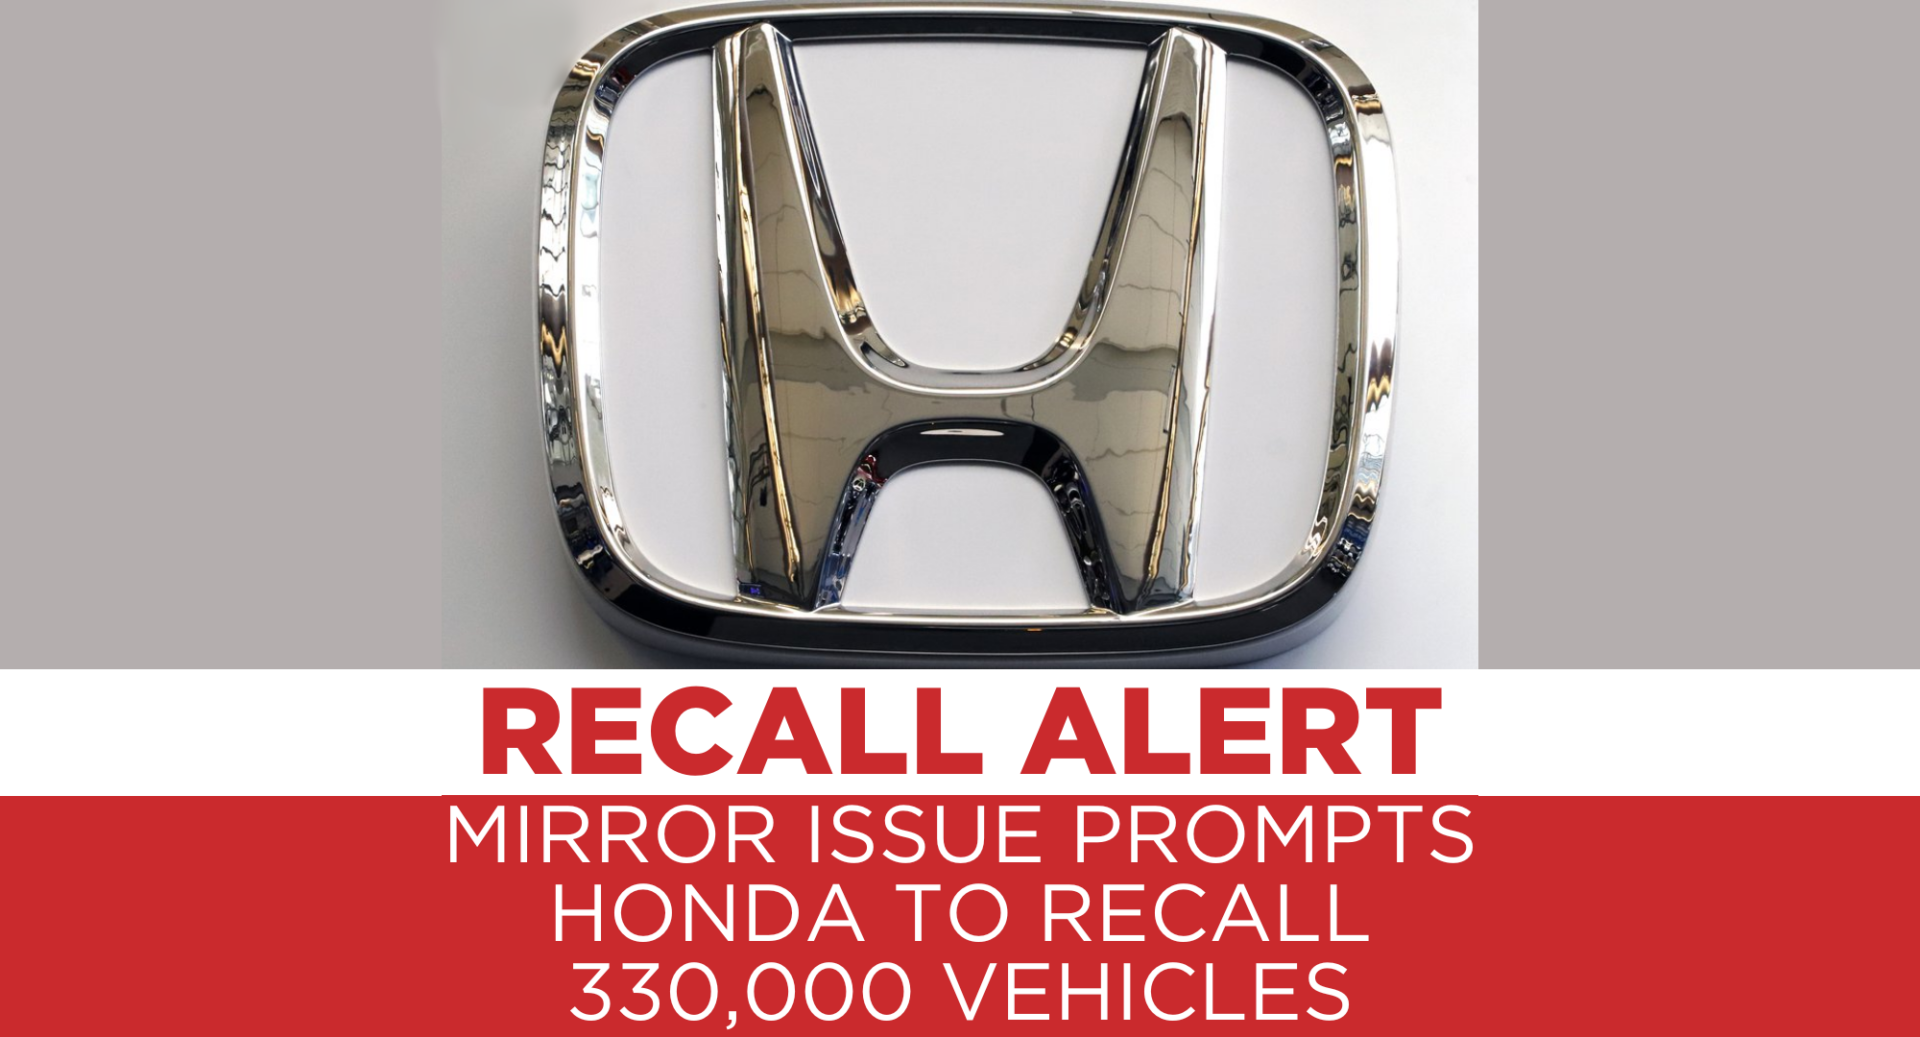 Honda llama a revisión más de 330,000 vehículos debido a problemas con los espejos